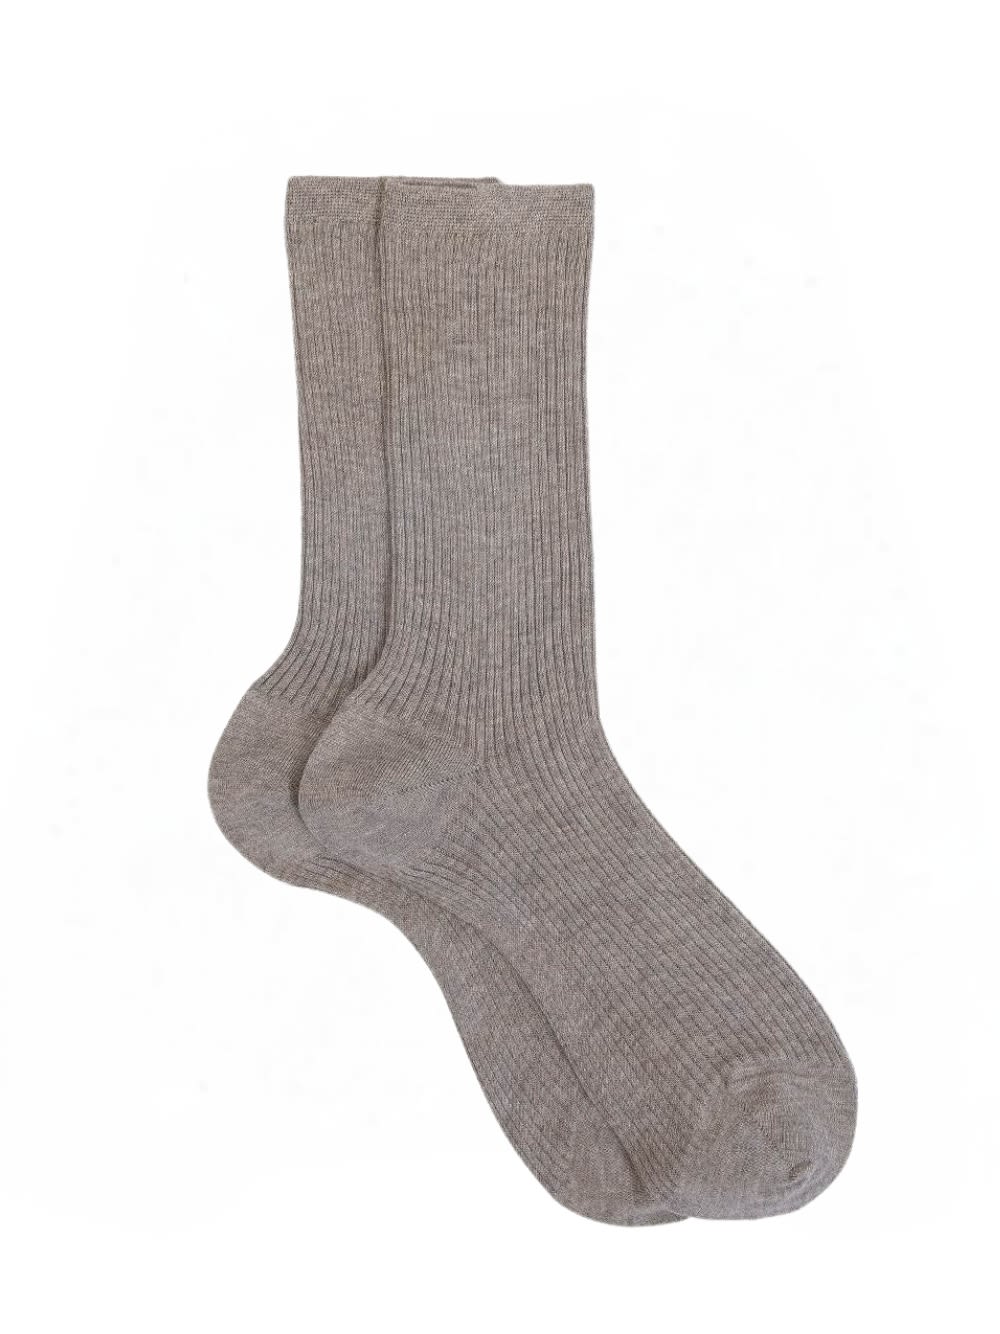 Wd013un4008 Socks